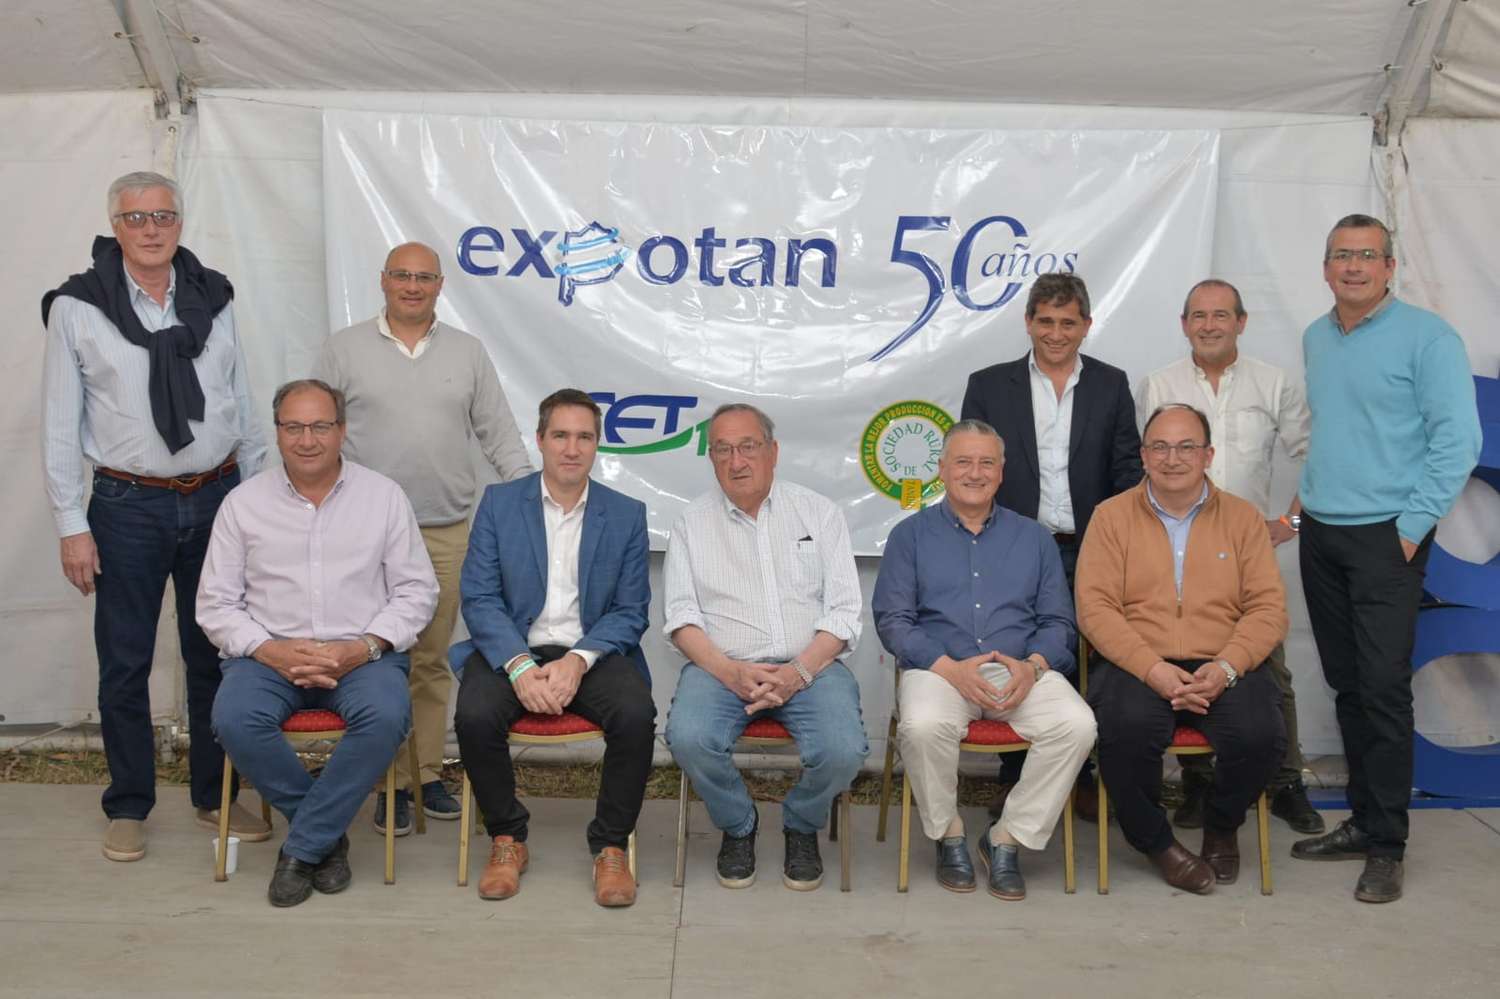 Intendentes de la región se reunieron en la Expotan para compartir experiencias de gestión